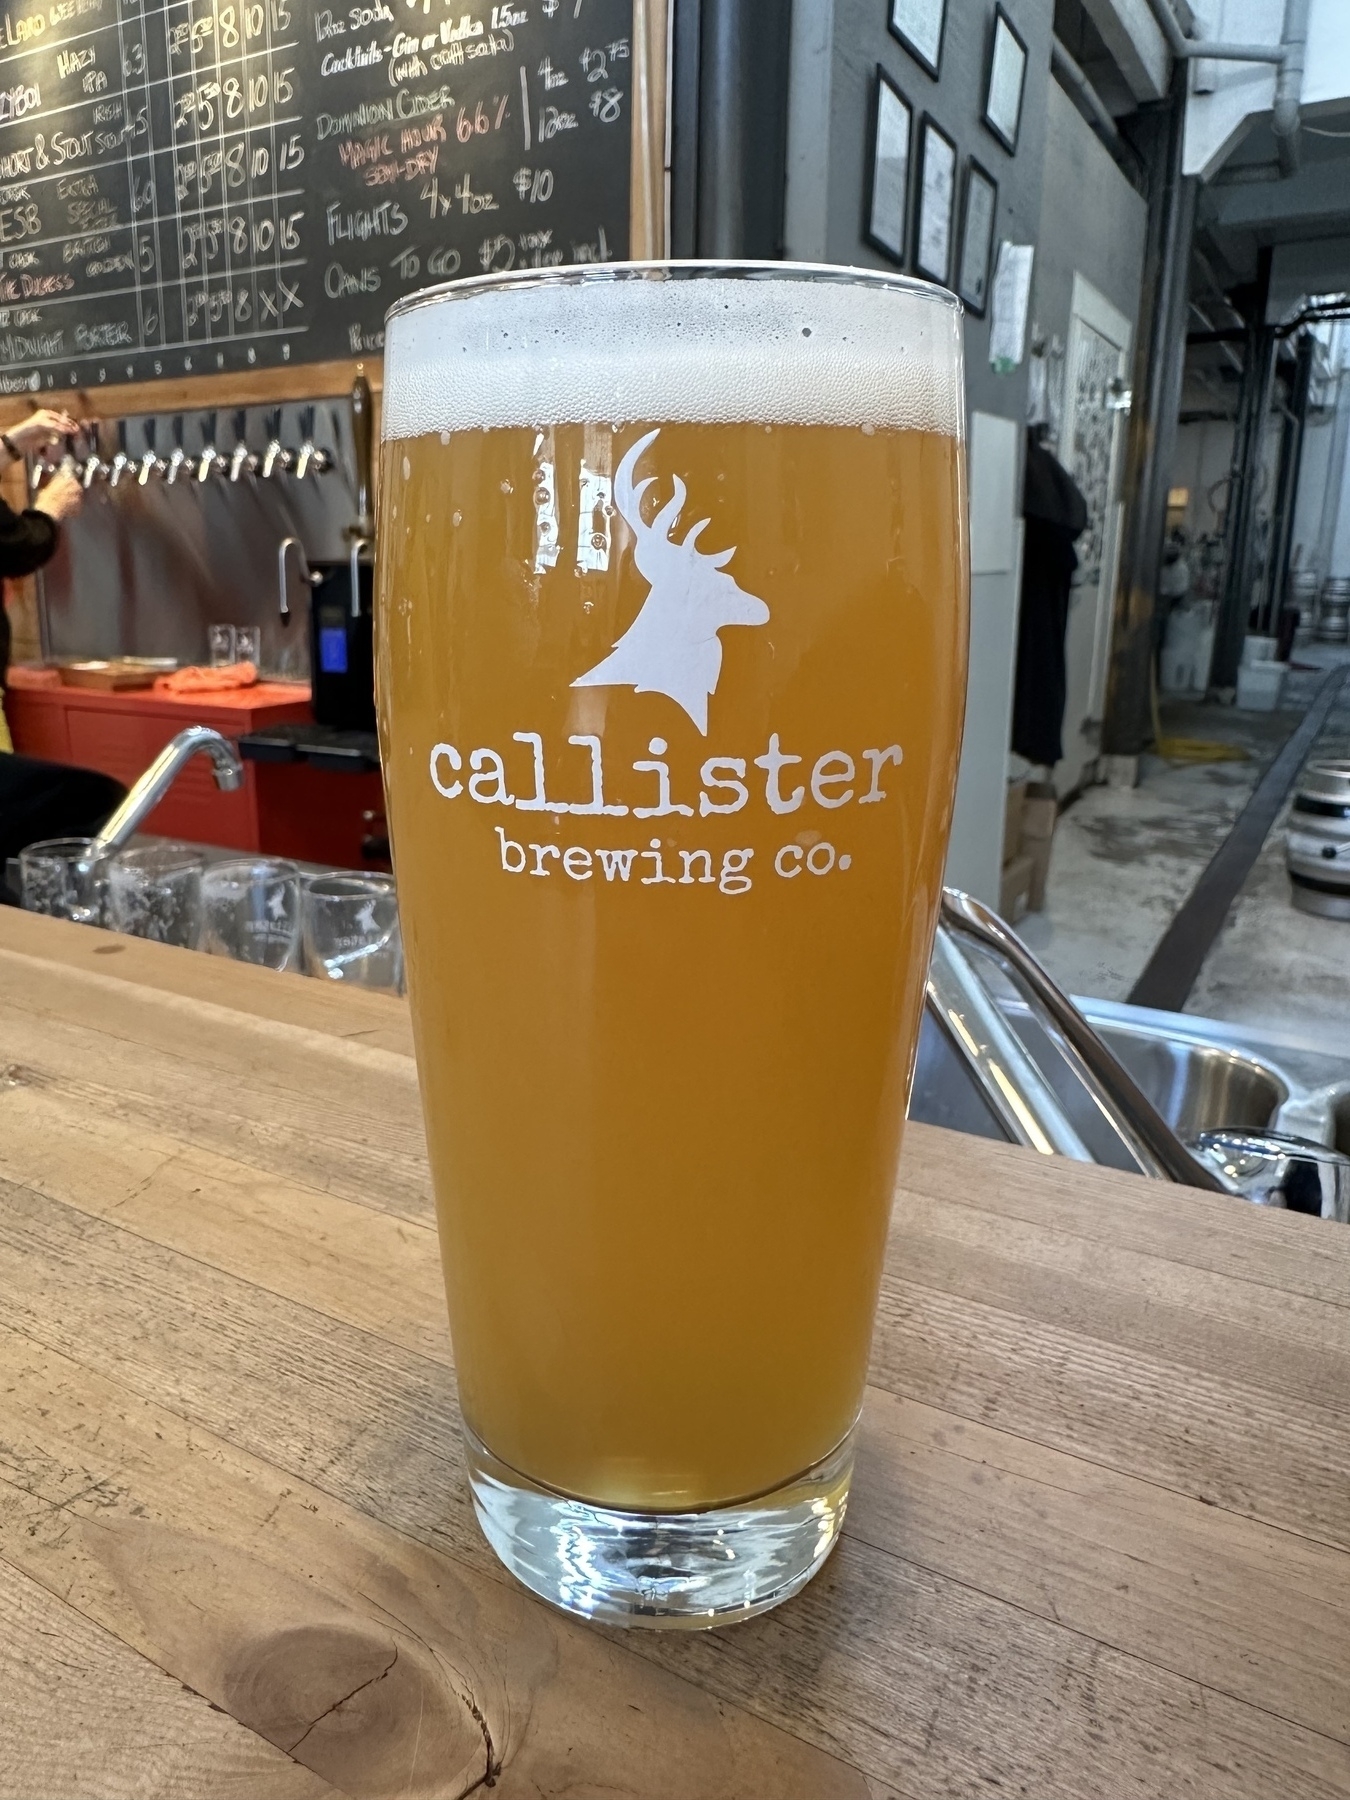 A pint of Callister beer.